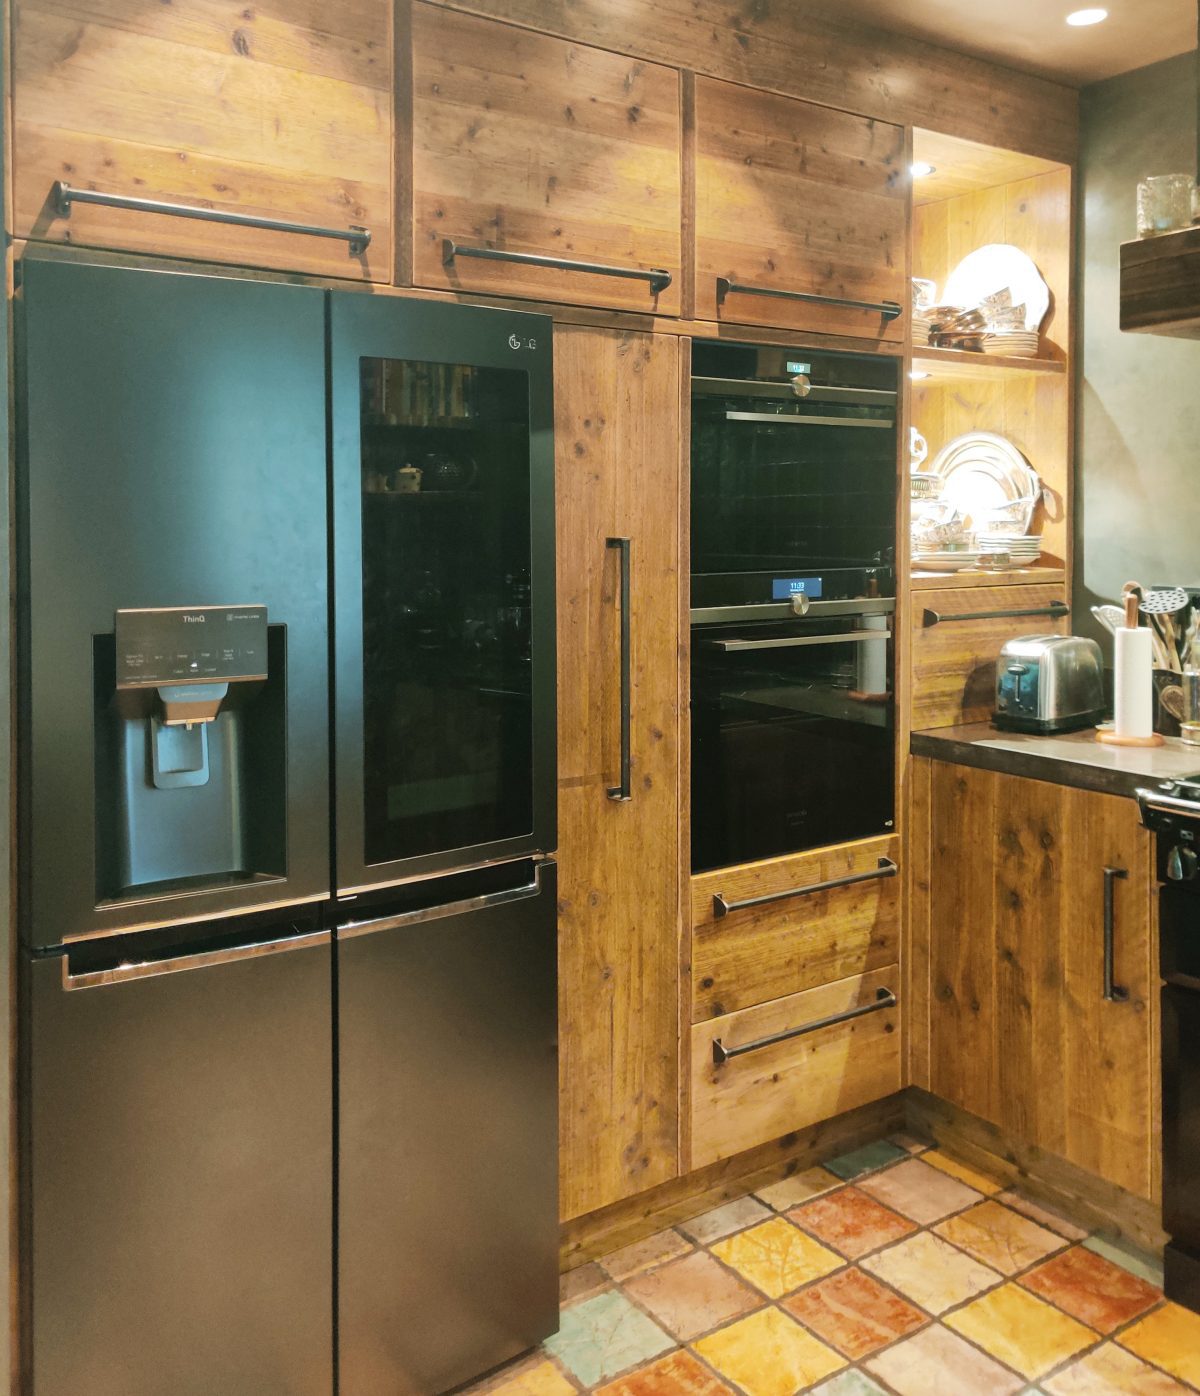 Een grote Amerikaanse koelkast met watertank in een sfeervolle ronde keuken gemaakt van solide steigerhout met op maat gemaakte industriële grepen. Het aanrechtblad en de gootsteen zijn van hardsteen, oftewel natuursteen.